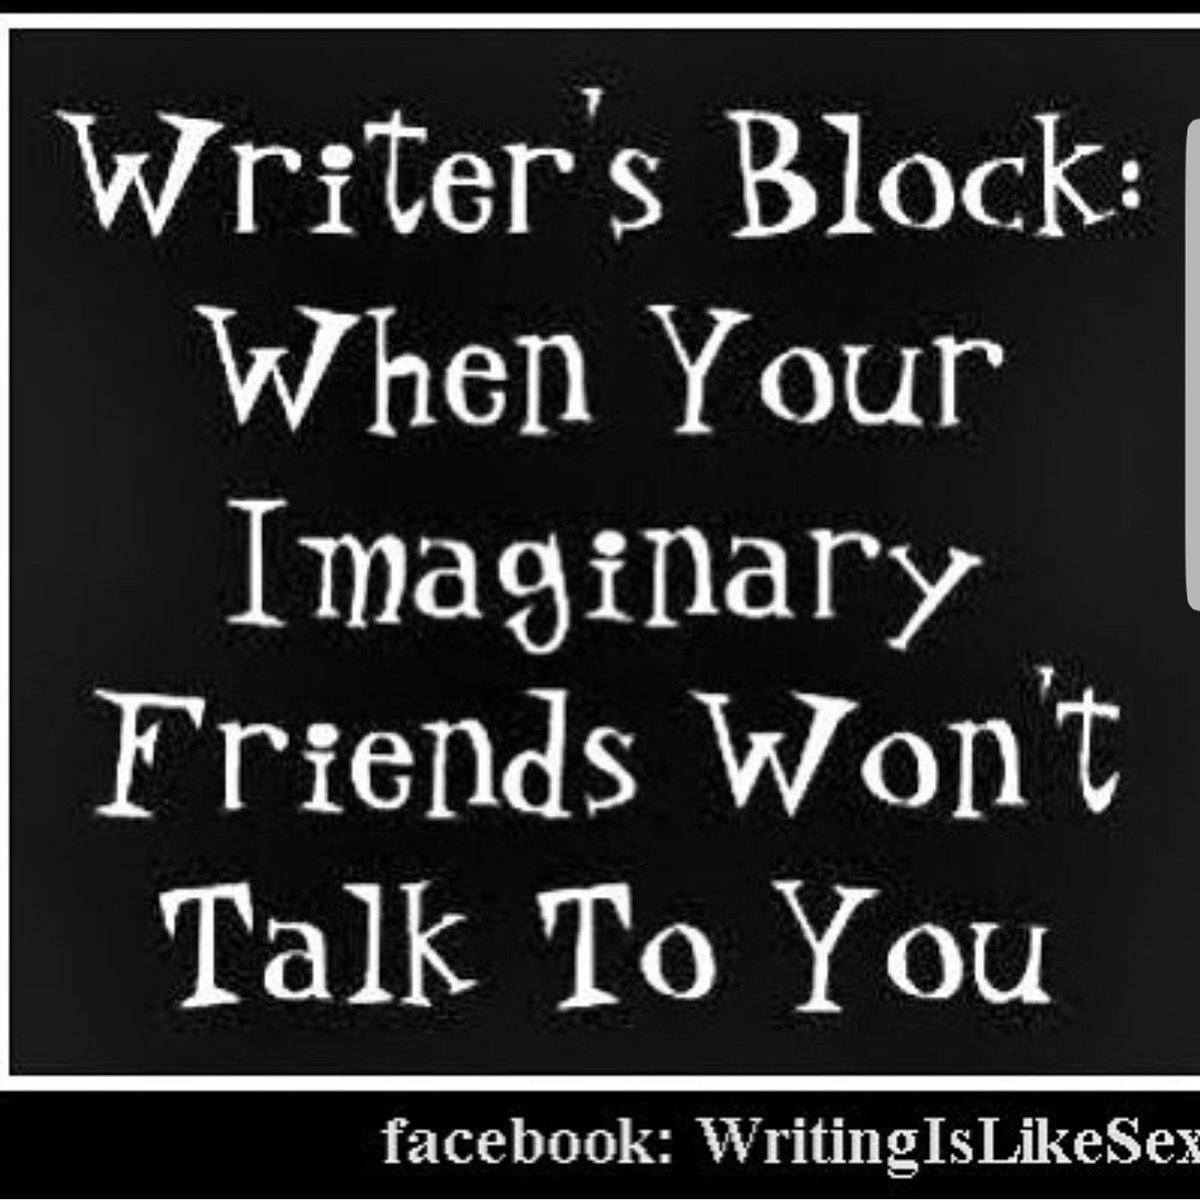 Muhahaha #writersblock #writingcommunity #writerscommunity #writersofinsta #amwriting #amwritingscifi #amwritingfantasy #YA #amreading #amediting #amwritingYA #AmRevising #YAFantasy #writersproblems #writerlife #imaginaryfriends